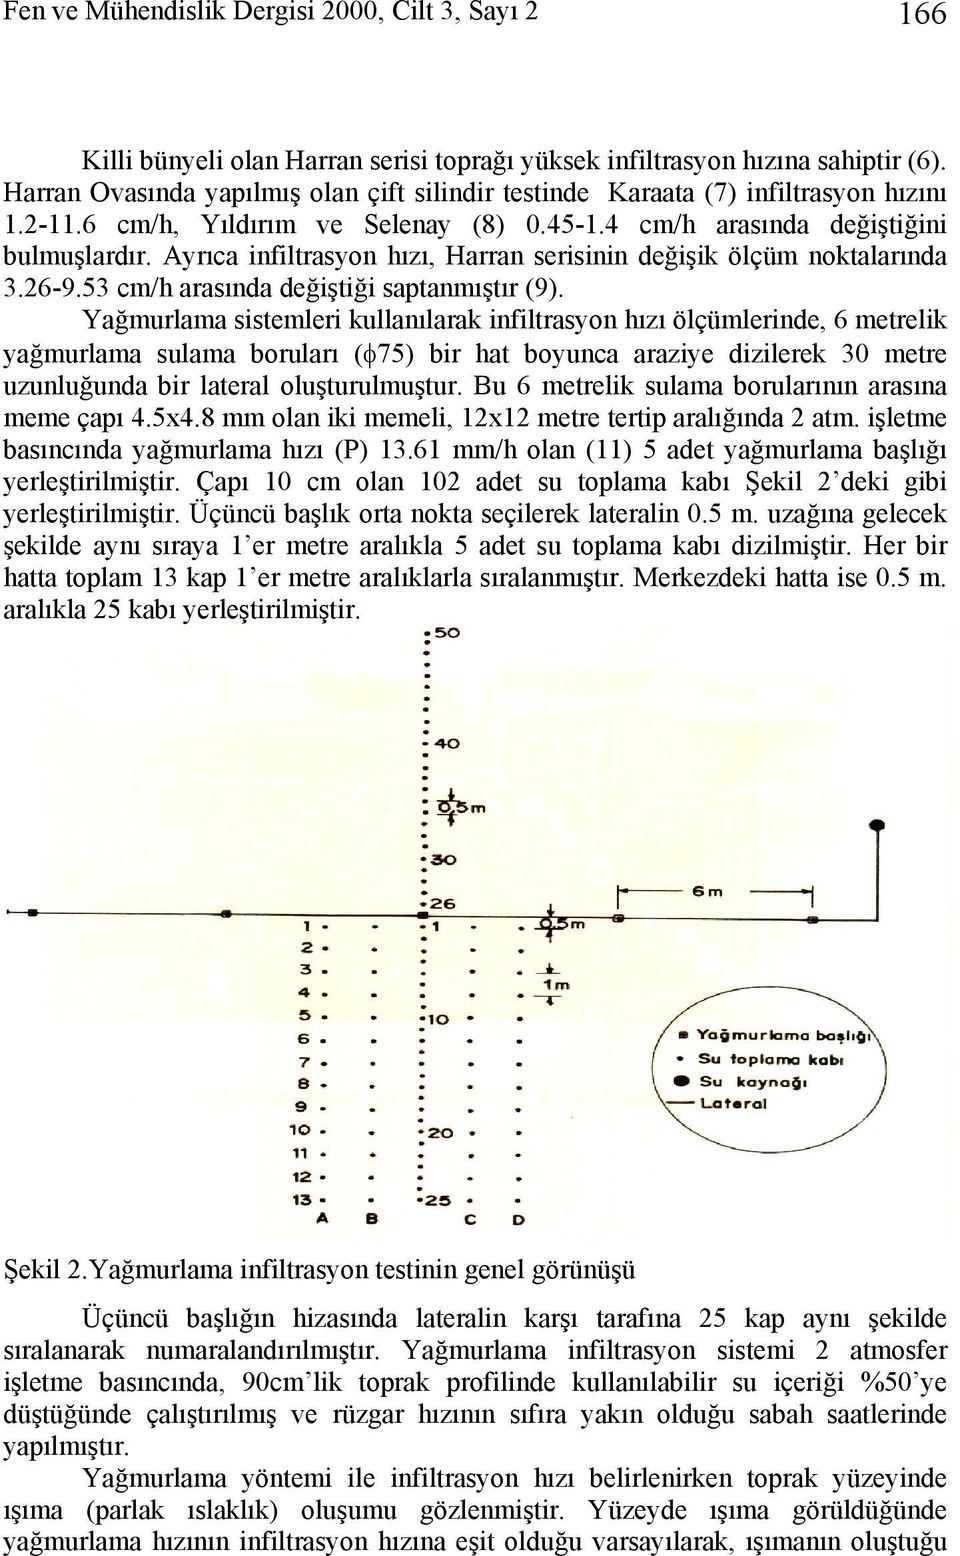 Ayrıca ifiltrasyo hızı, Harra serisii değişik ölçüm oktalarıda 3.26-9.53 cm/h arasıda değiştiği saptamıştır (9).